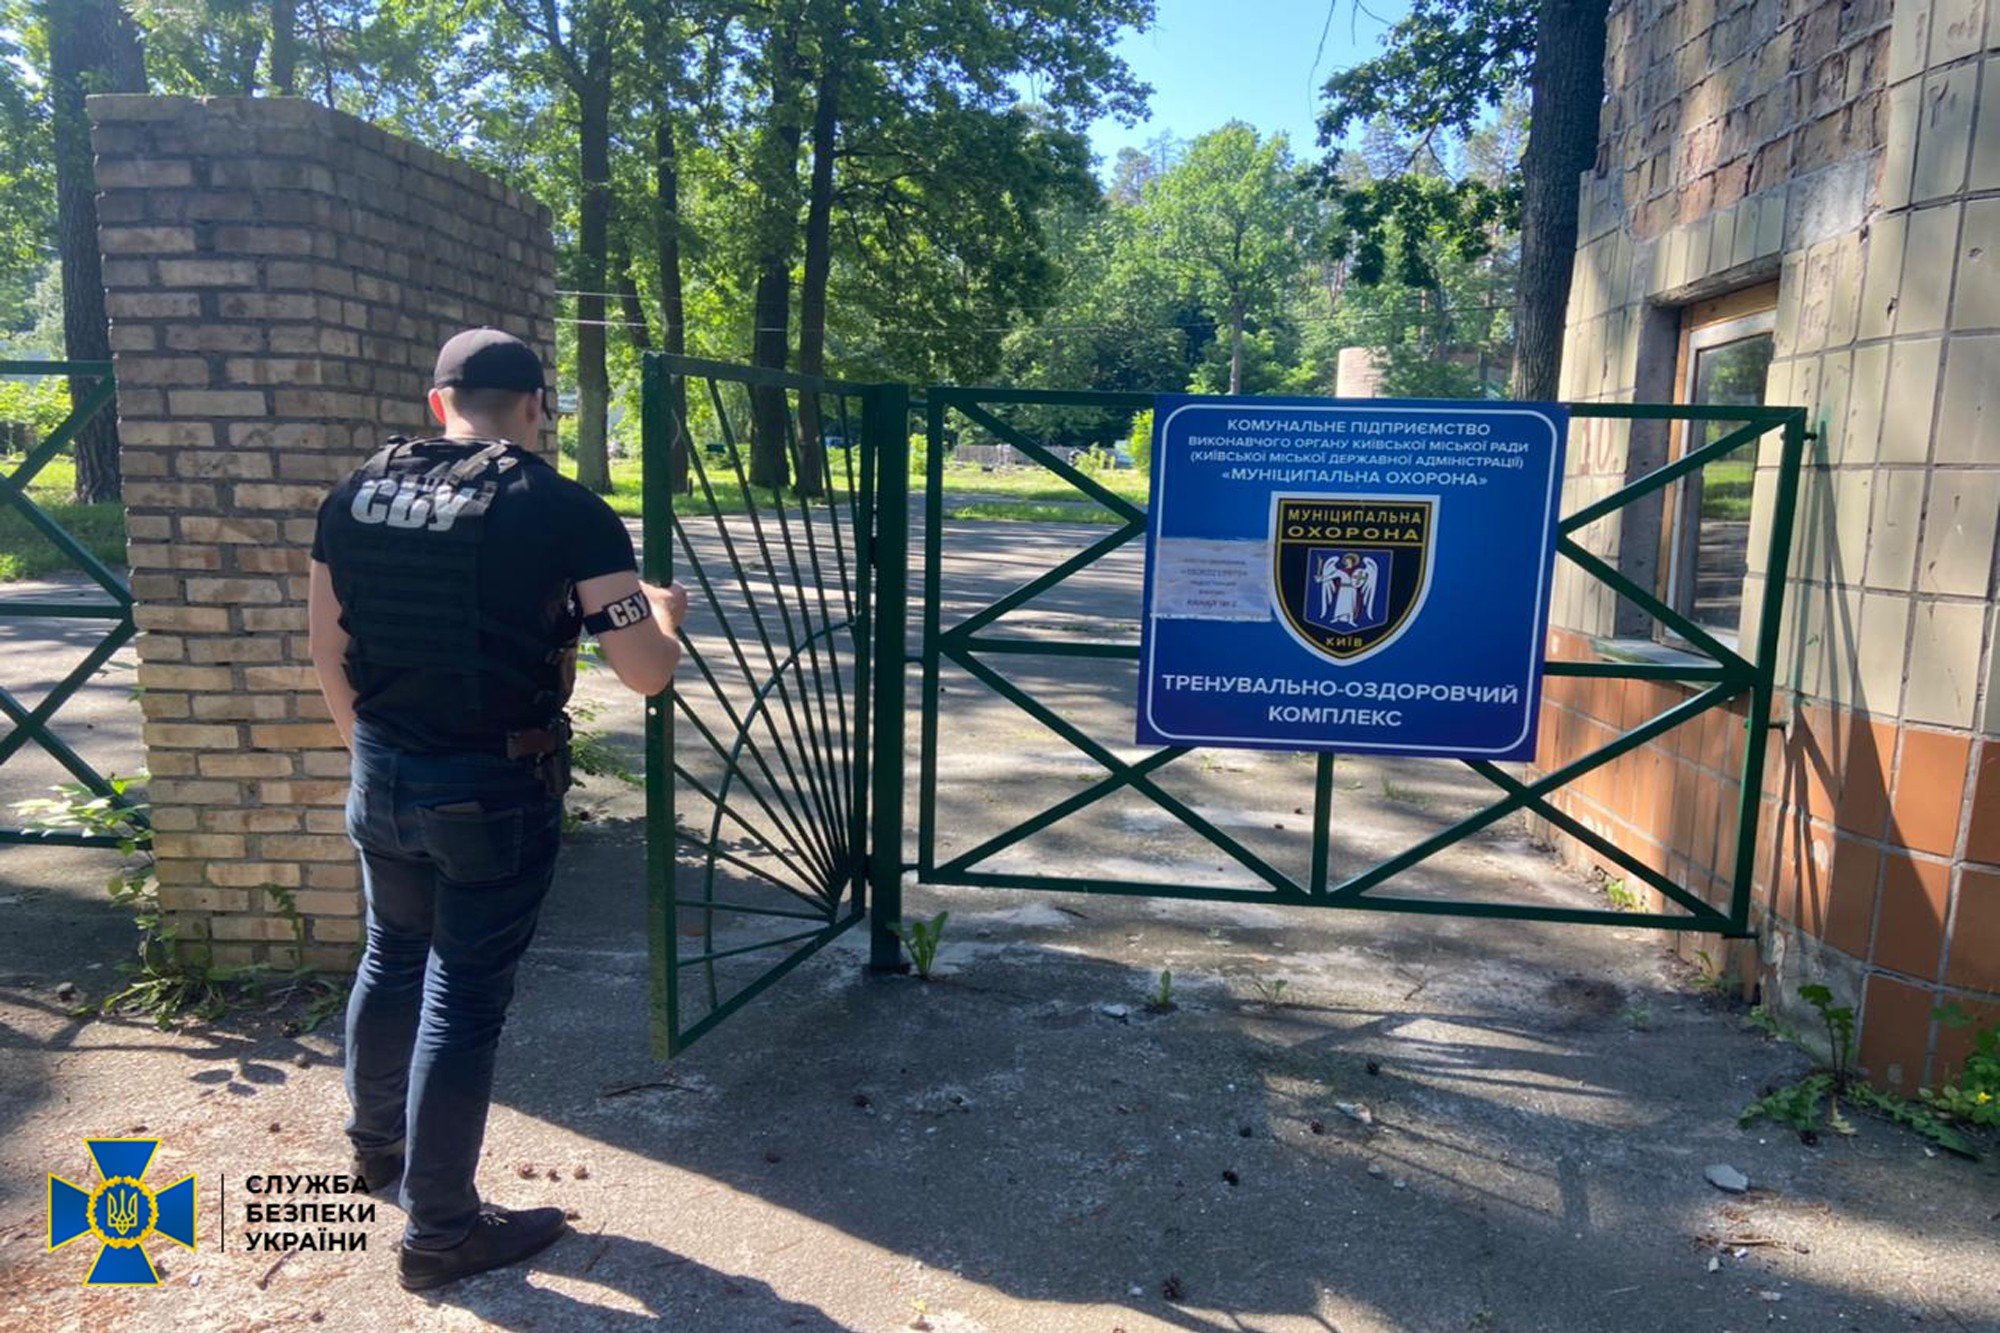 В Киеве СБУ проводит обыски в офисе «Муниципальной стражи». ВИДЕО